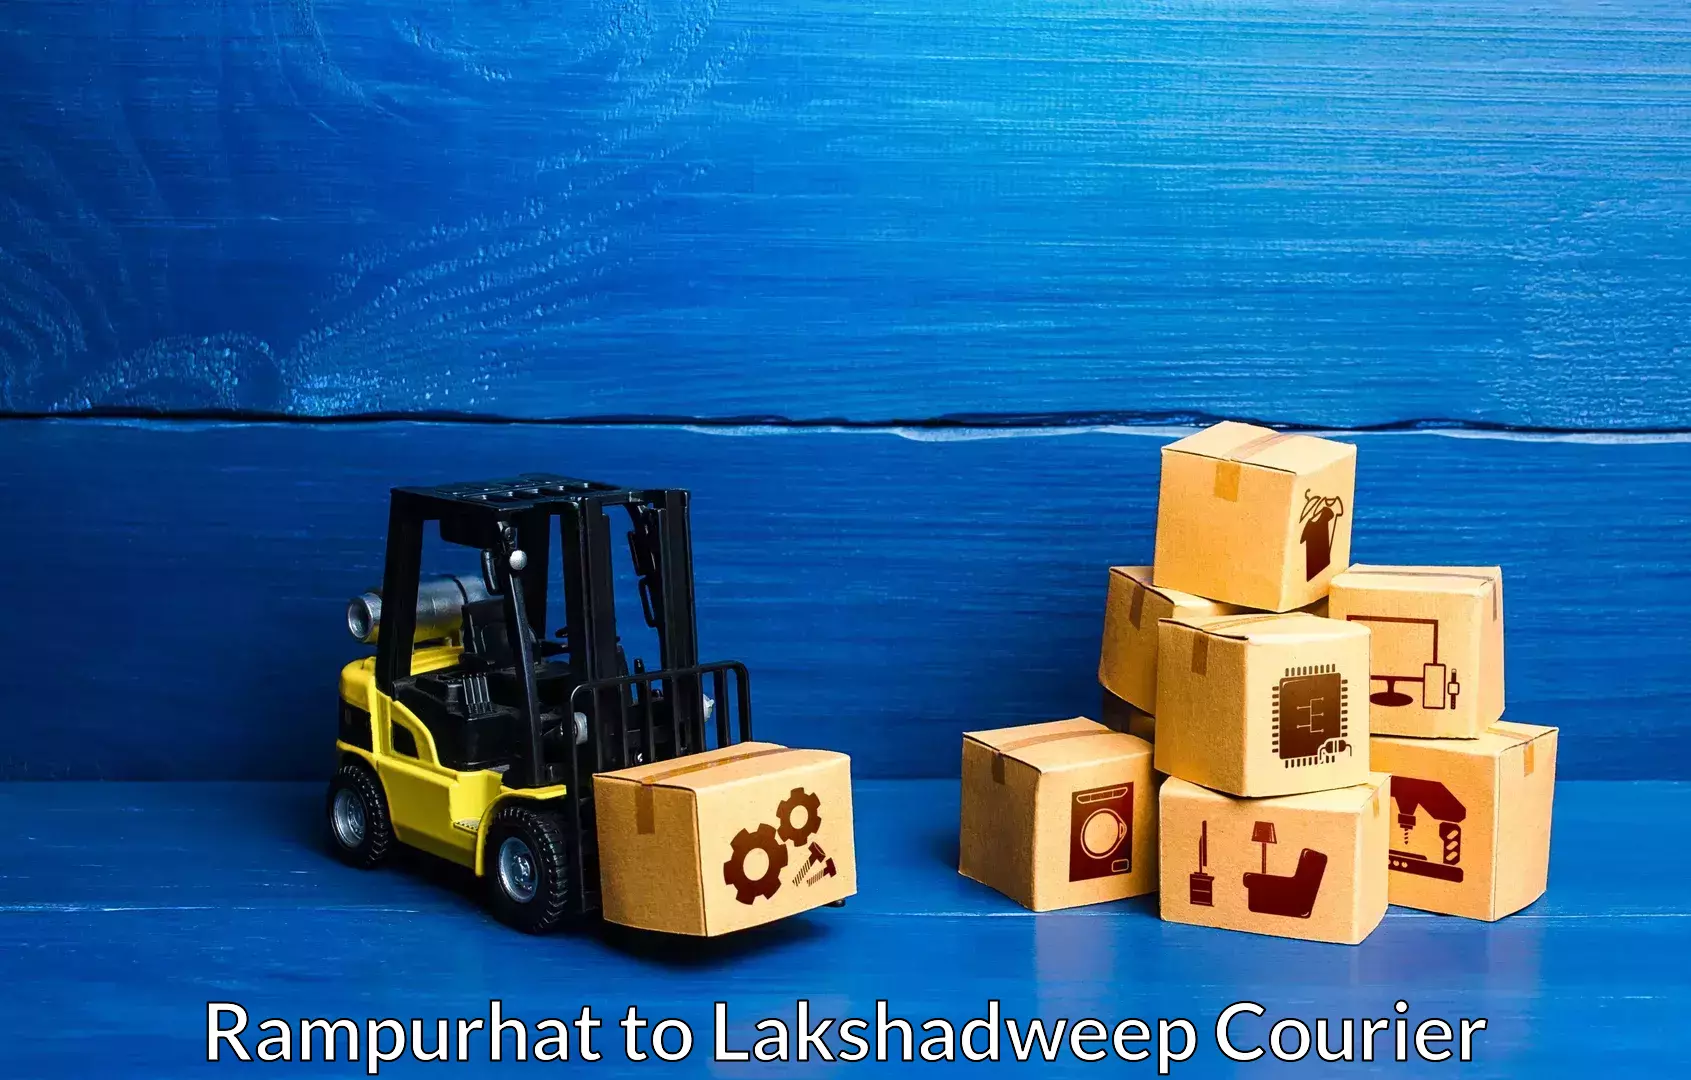 Furniture moving experts Rampurhat to Lakshadweep